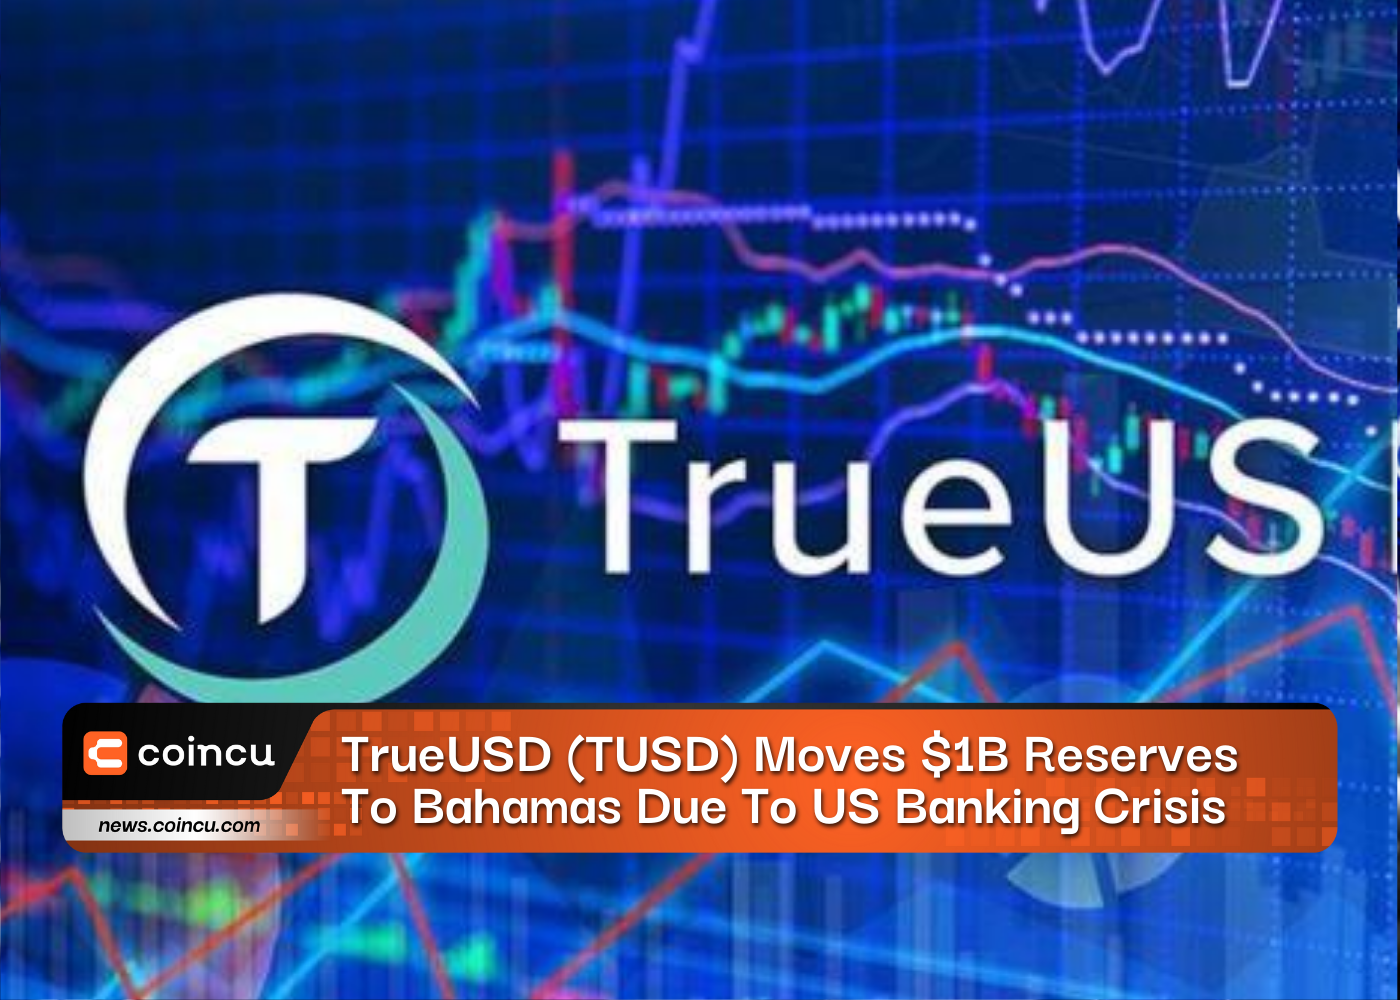 TrueUSD (TUSD) перемещает резервы в размере 1 миллиарда долларов на Багамы из-за банковского кризиса в США